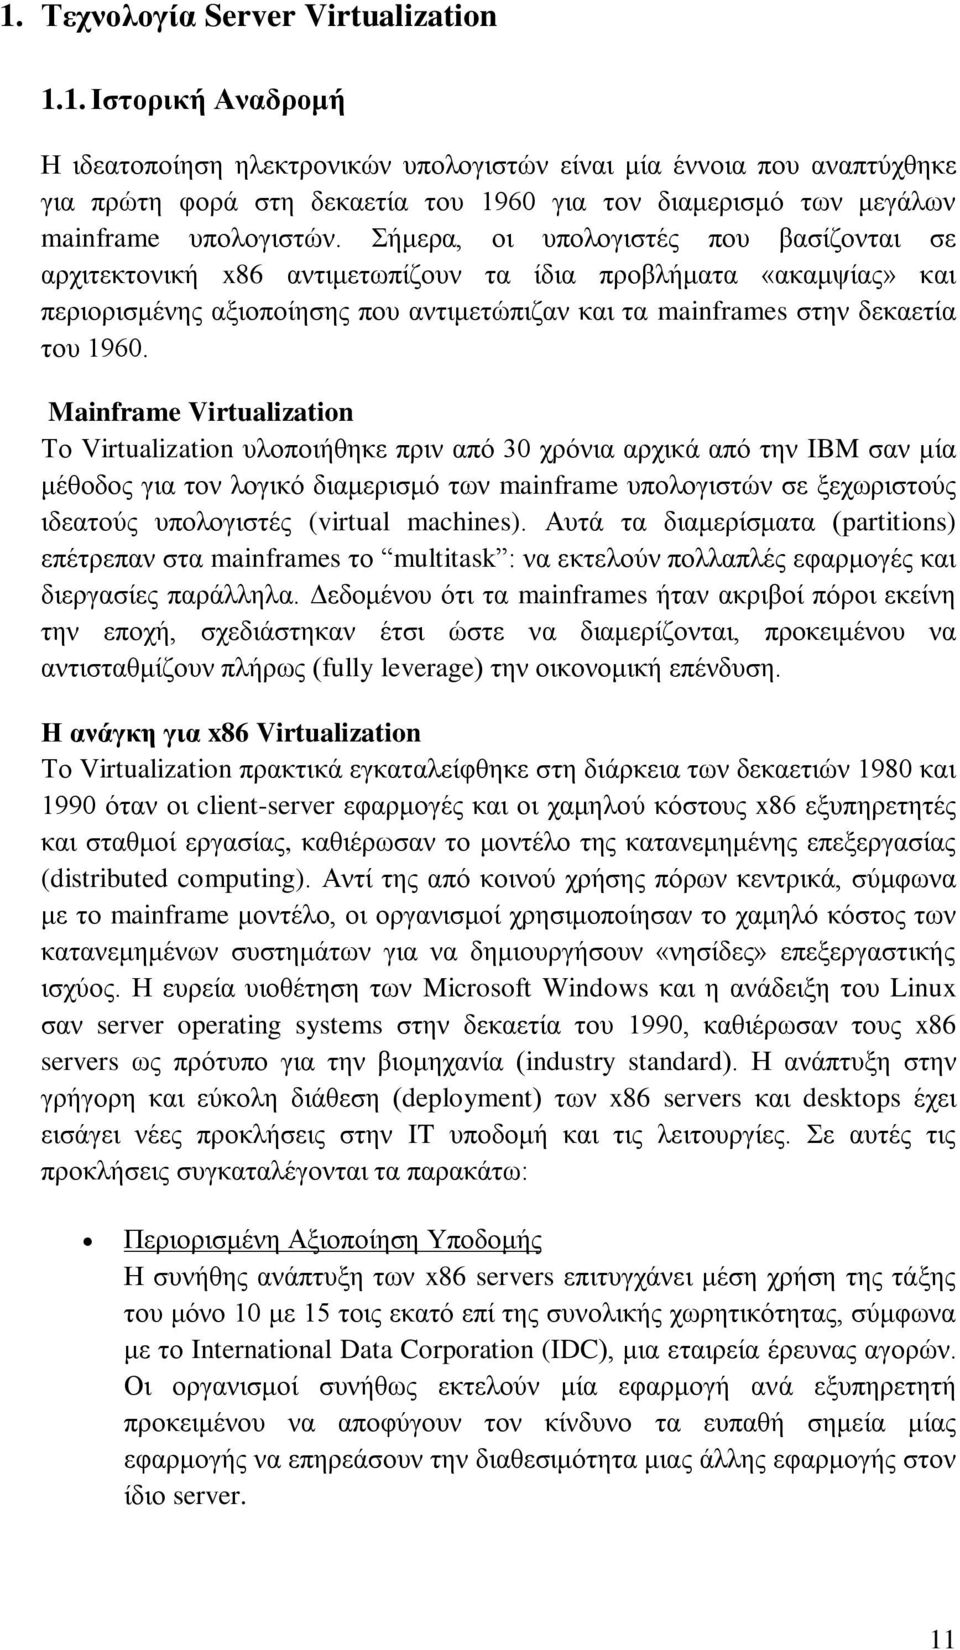 Mainframe Virtualization Το Virtualization υλοποιήθηκε πριν από 30 χρόνια αρχικά από την IBM σαν μία μέθοδος για τον λογικό διαμερισμό των mainframe υπολογιστών σε ξεχωριστούς ιδεατούς υπολογιστές